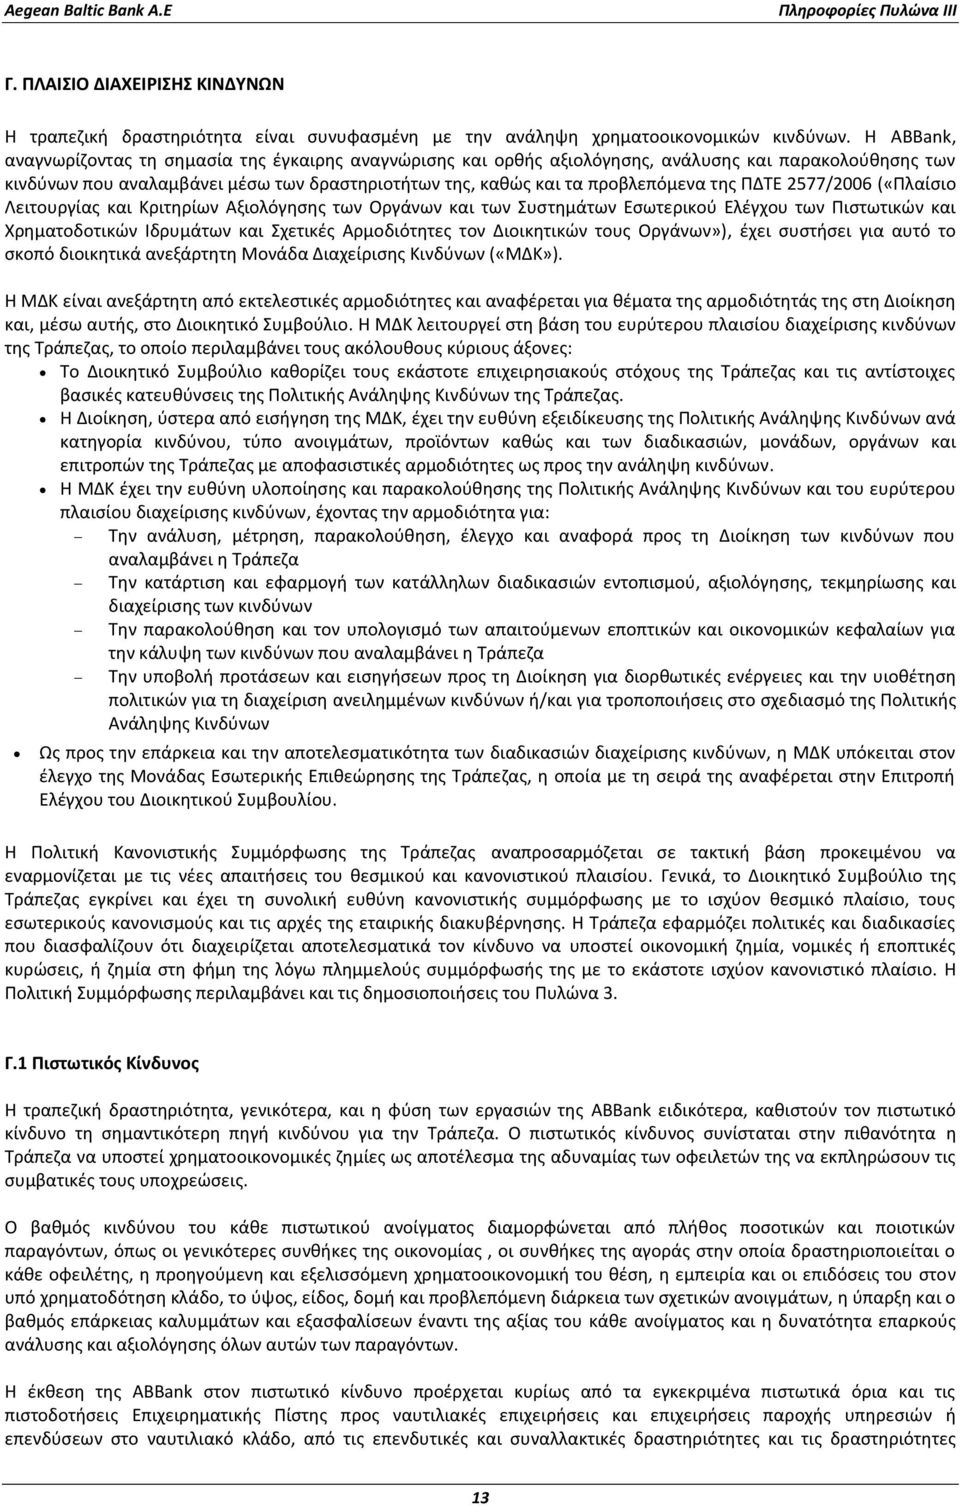 ΠΔΤΕ 2577/2006 («Πλαίσιο Λειτουργίας και Κριτηρίων Αξιολόγησης των Οργάνων και των Συστημάτων Εσωτερικού Ελέγχου των Πιστωτικών και Χρηματοδοτικών Ιδρυμάτων και Σχετικές Αρμοδιότητες τον Διοικητικών